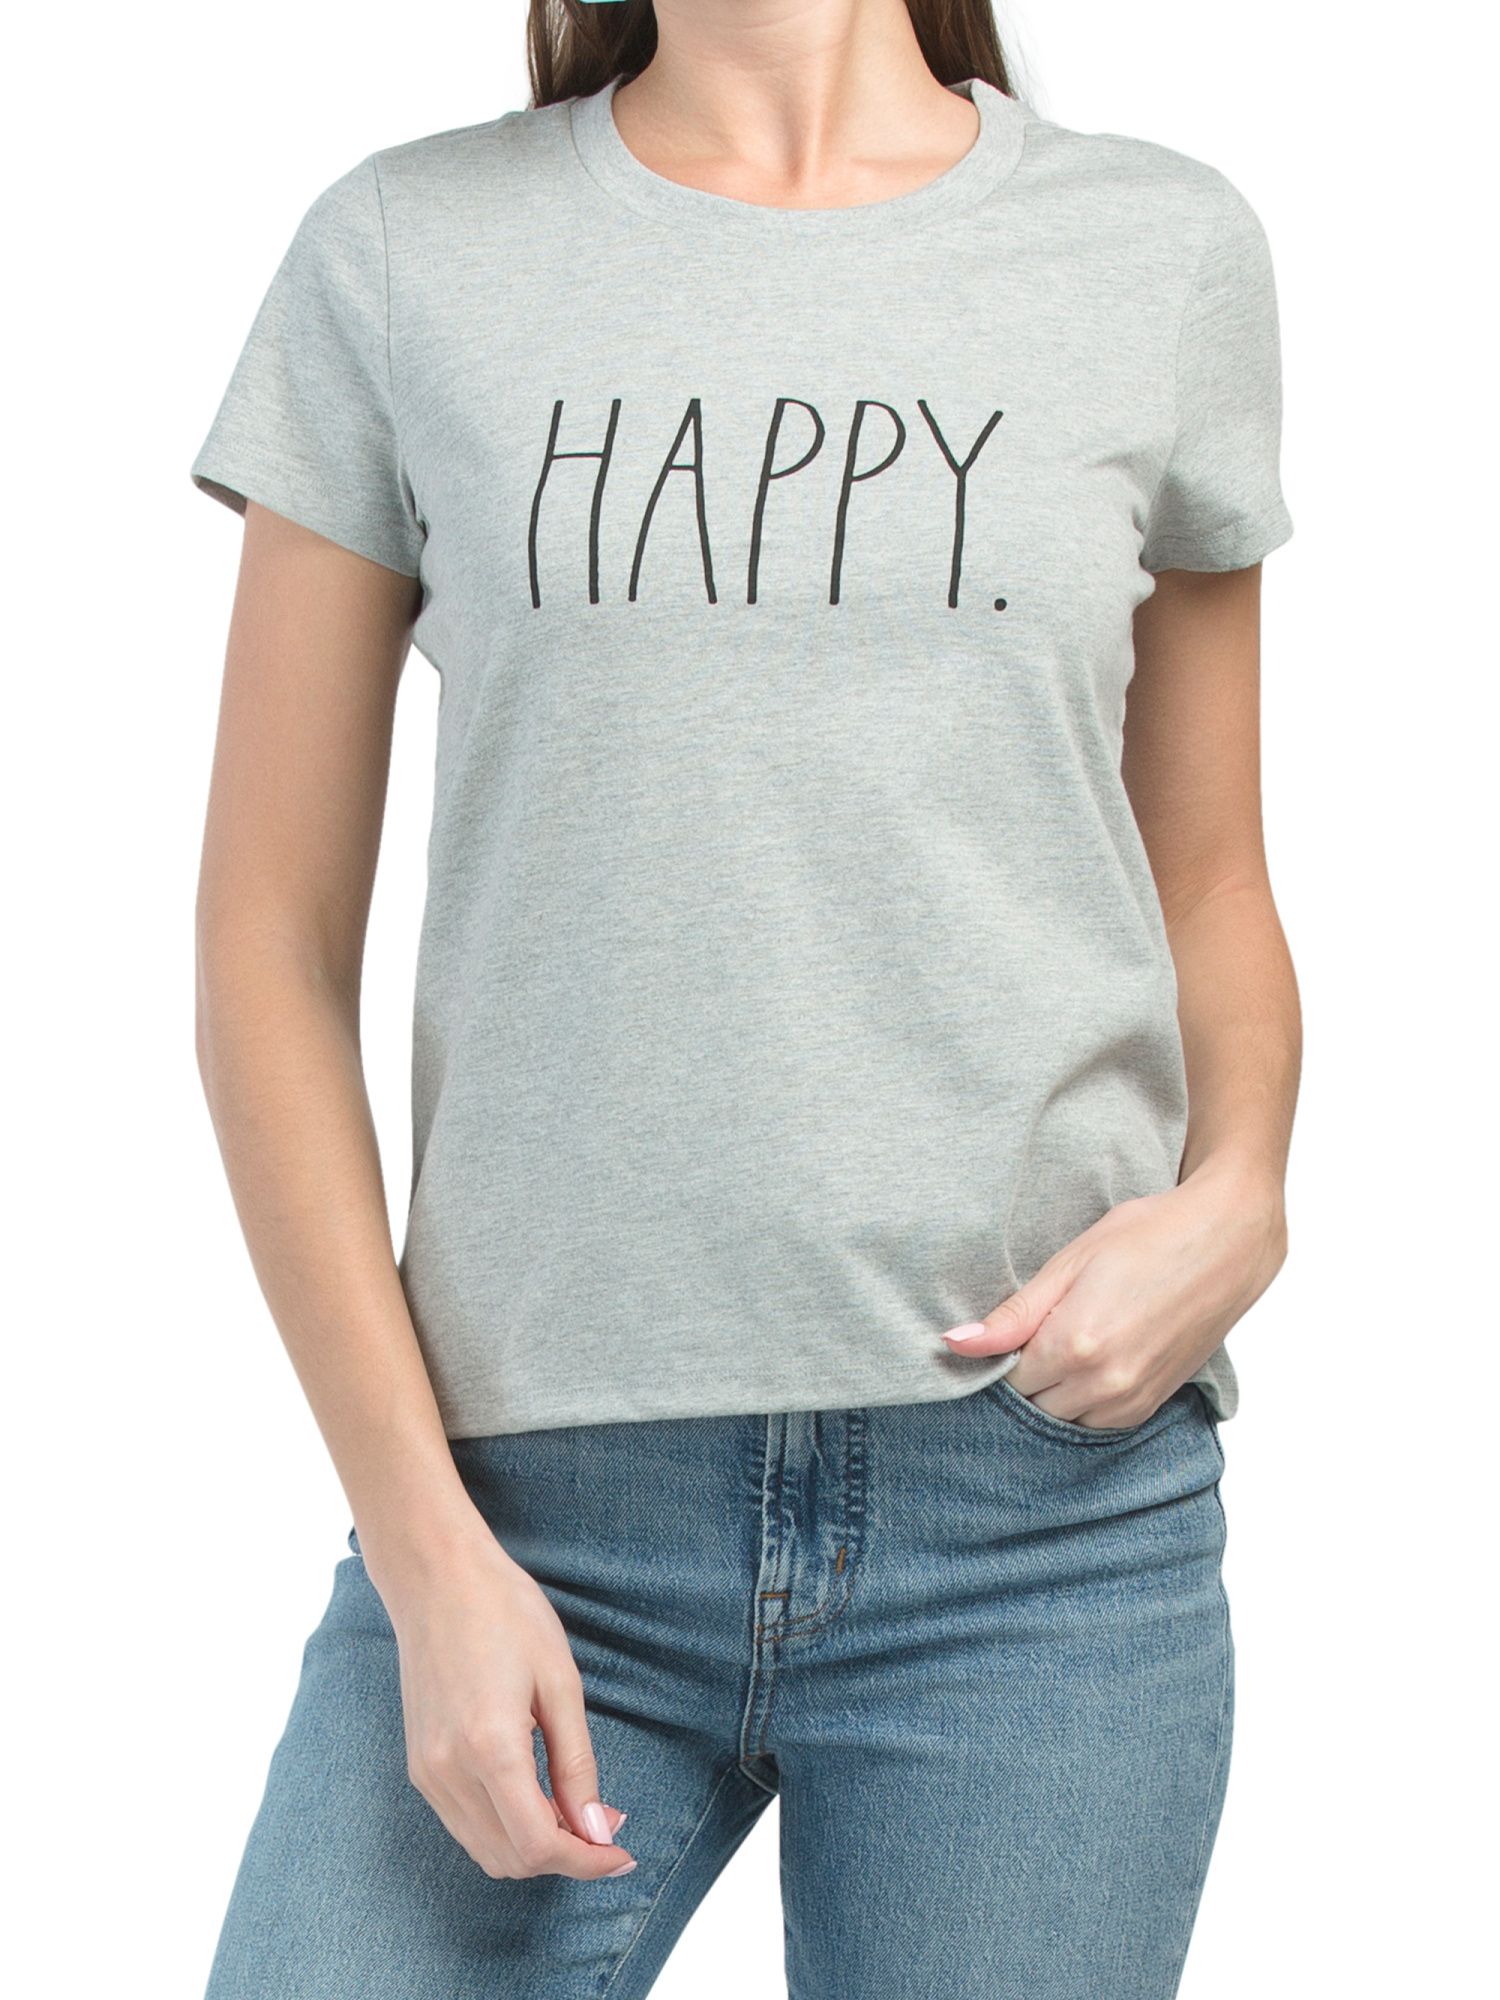 Happy T-shirt | TJ Maxx